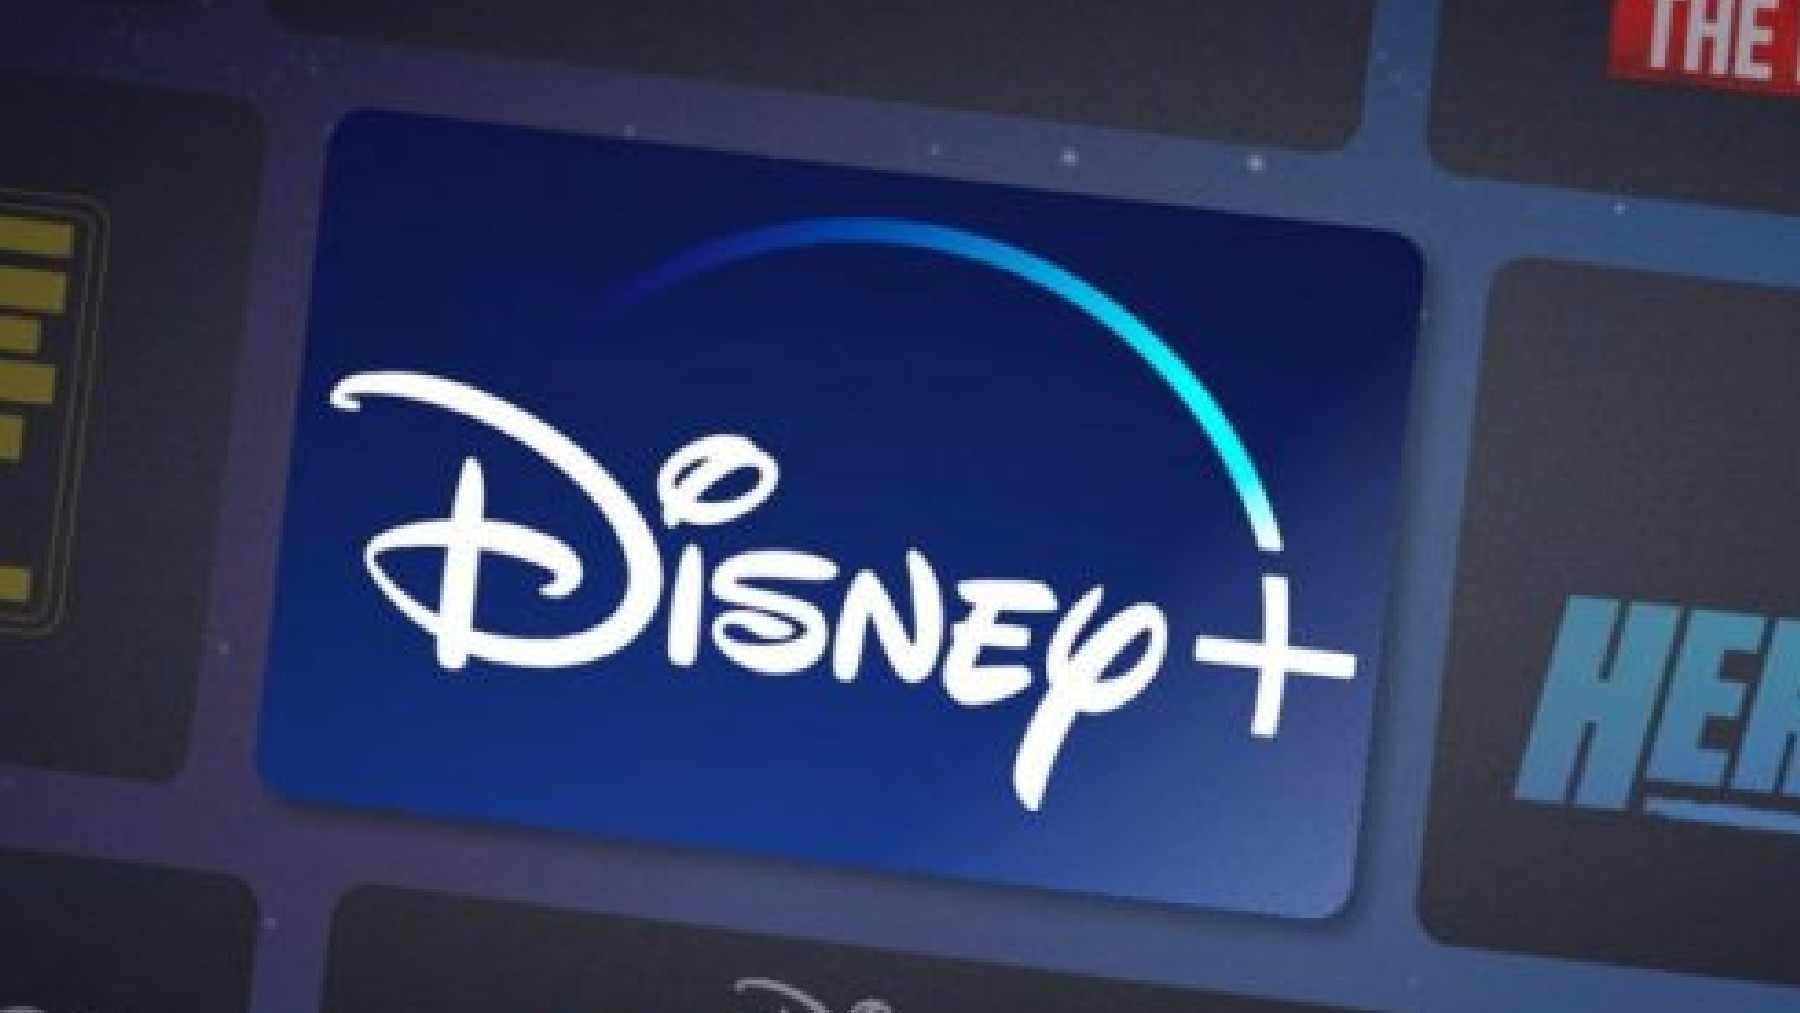 Disney invertirá 33 mil millones de dólares en su contenido de streaming en 2022